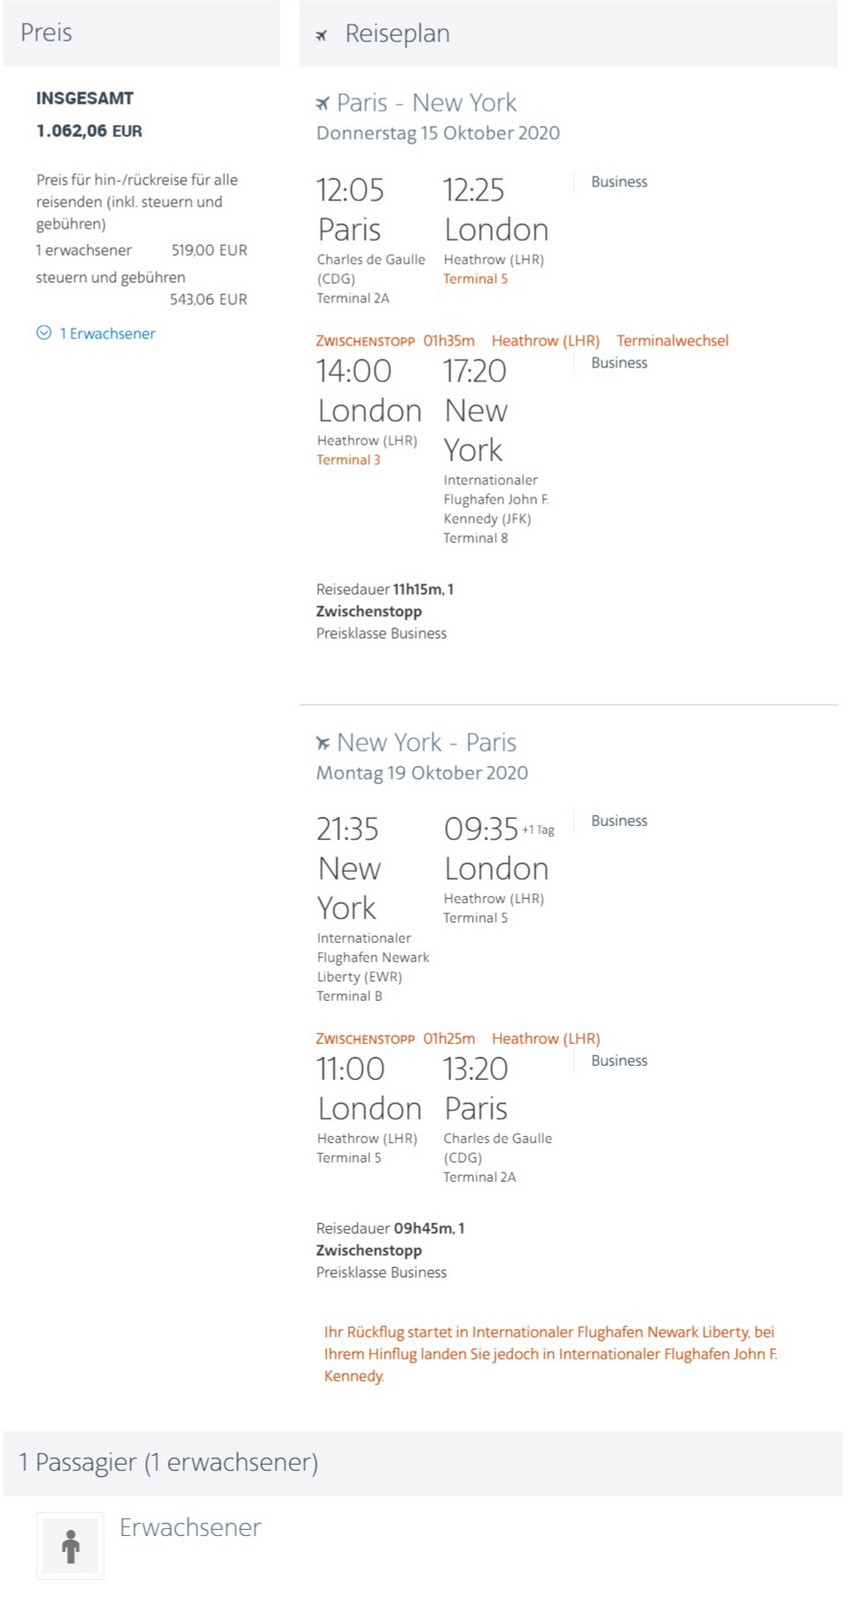 Preisbeispiel von Paris nach New York in der American Airlines und British Airways Business-Class